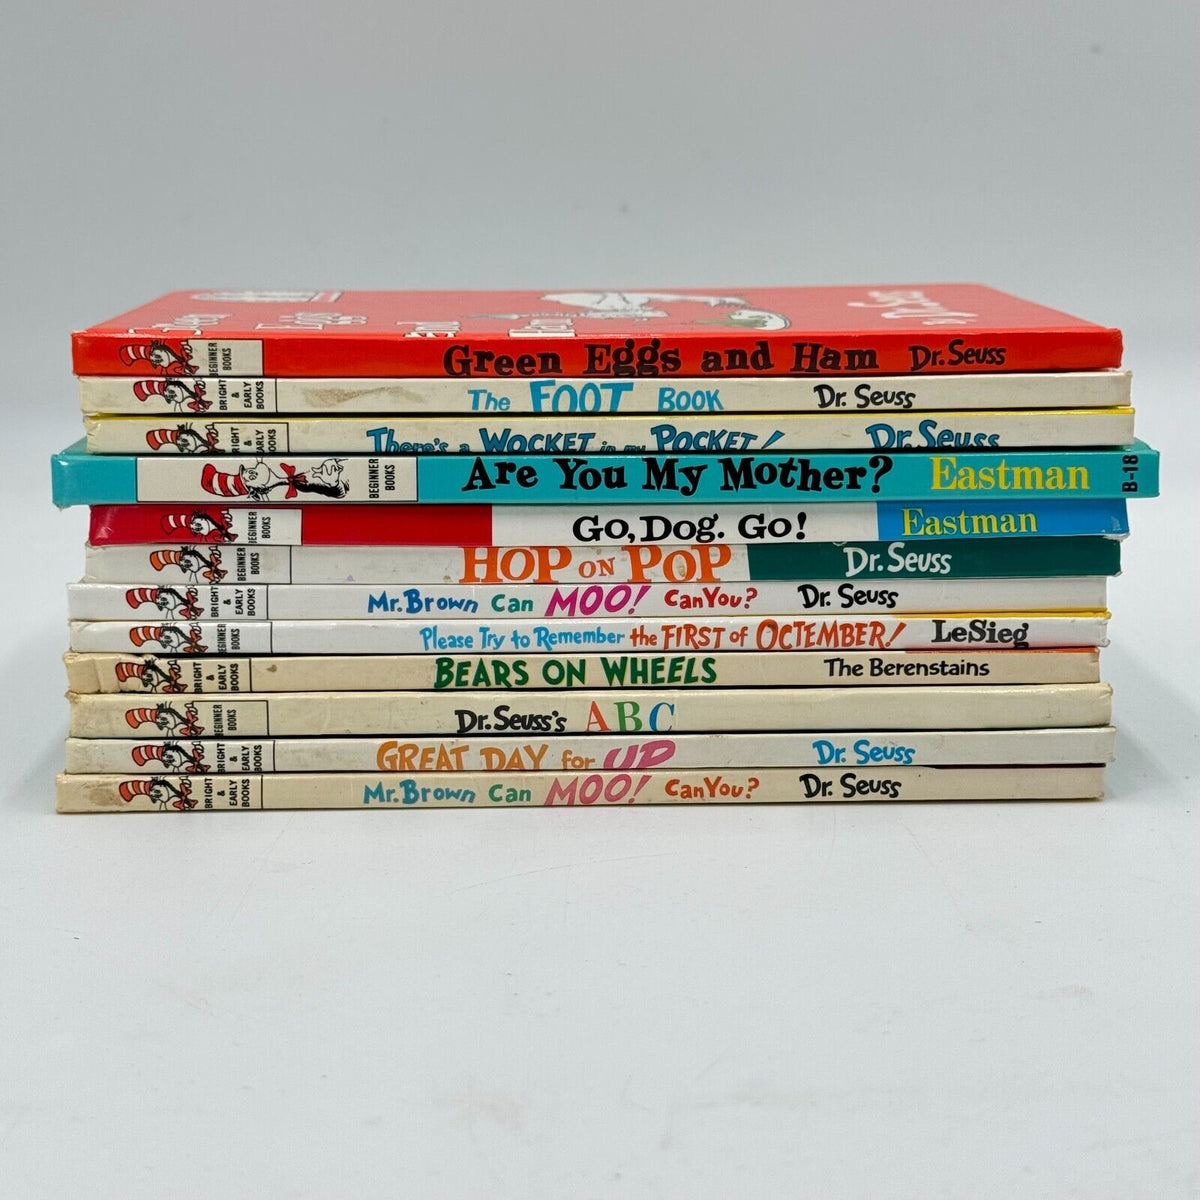 Lot of 12 Bright & Early Beginner’s Books Childrens Stories Seuss Easton LeSieg